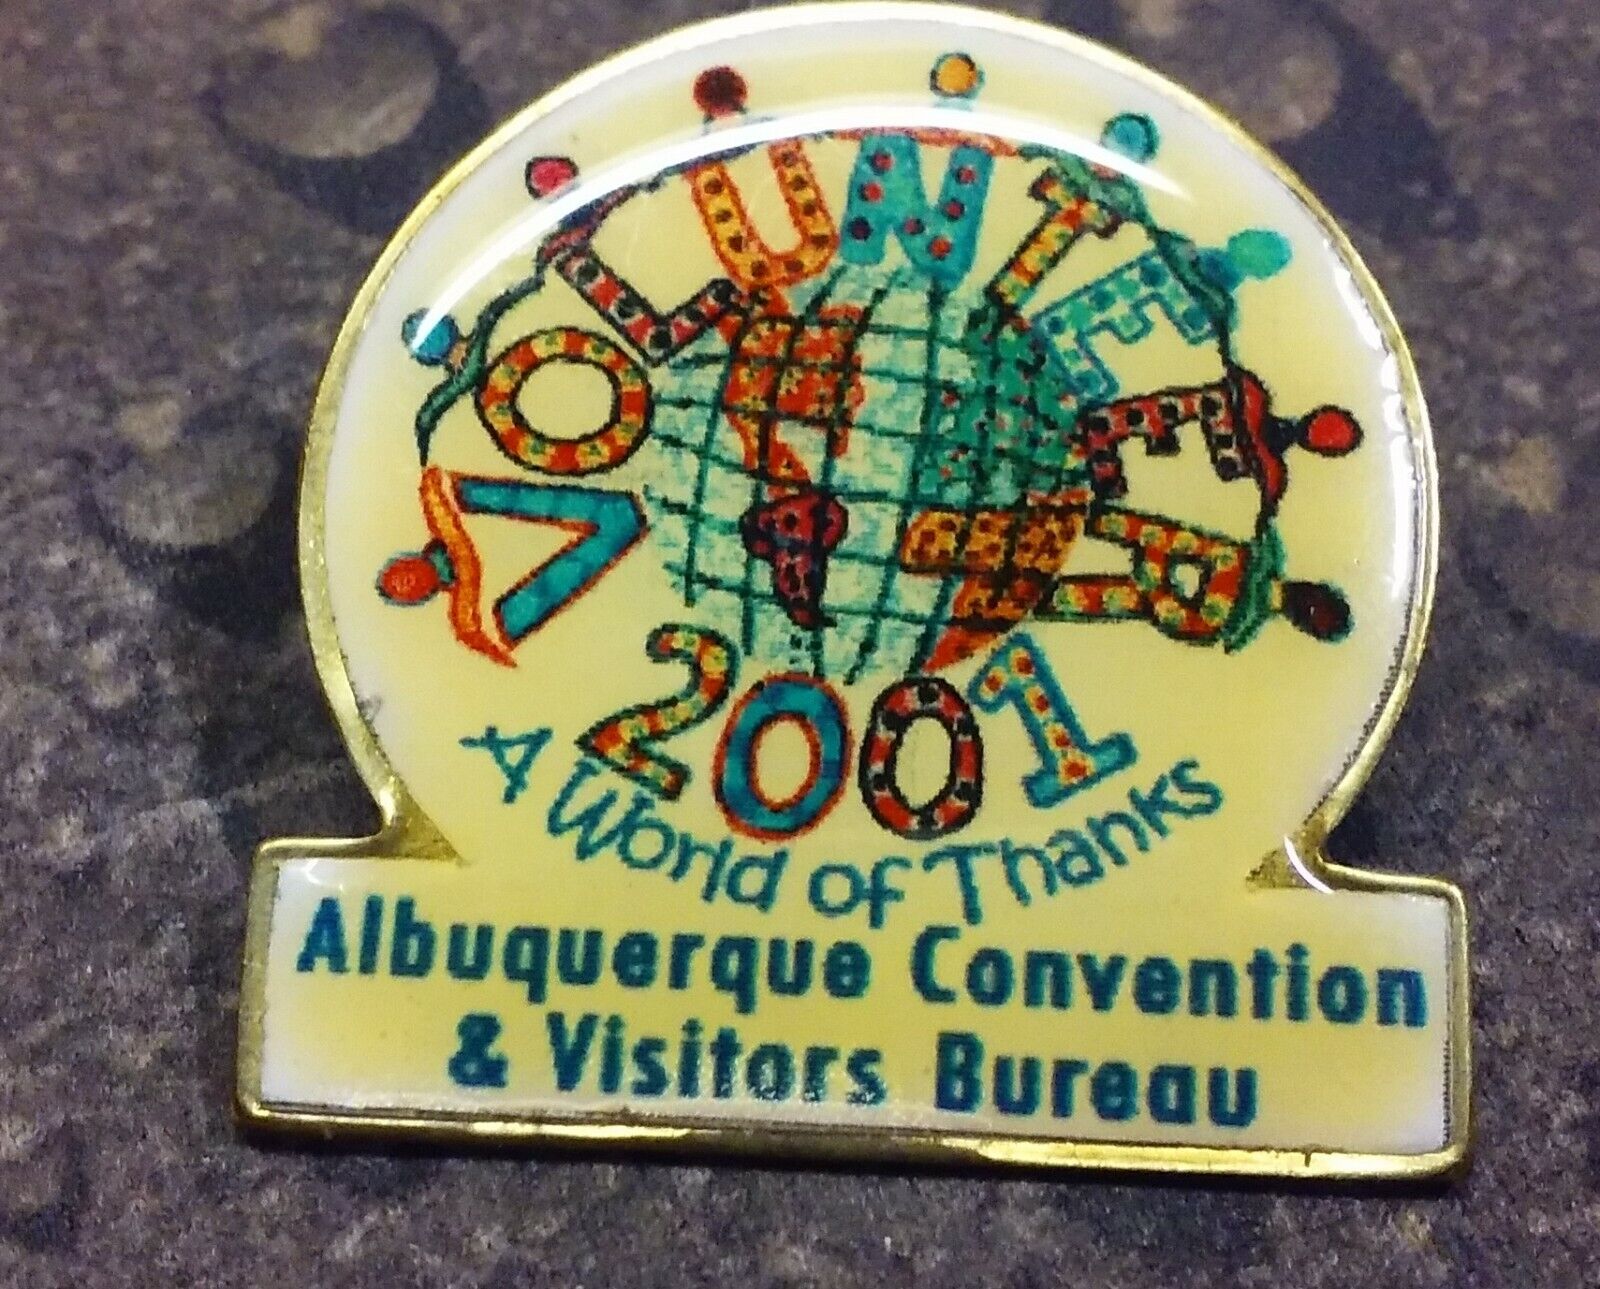 2001 Albuquerque Convention Visitors Bureau pin badge World of Thanks Volunteer